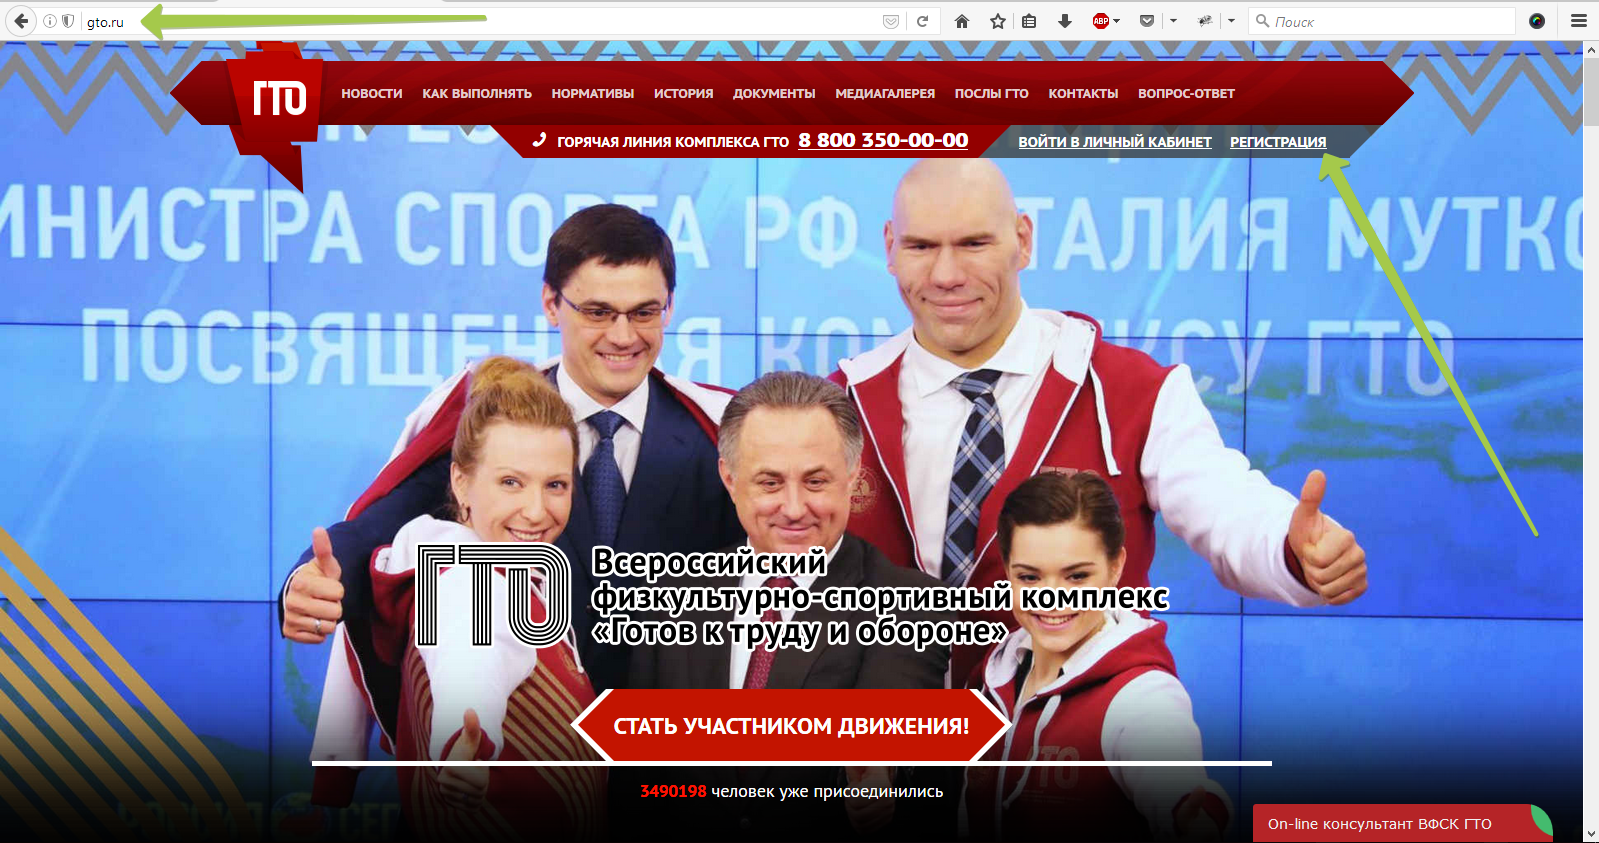 User gto ru user login. ВФСК ГТО регистрация. User.GTO.ru. Регистрация user.GTO.ru. УИН ГТО фото.